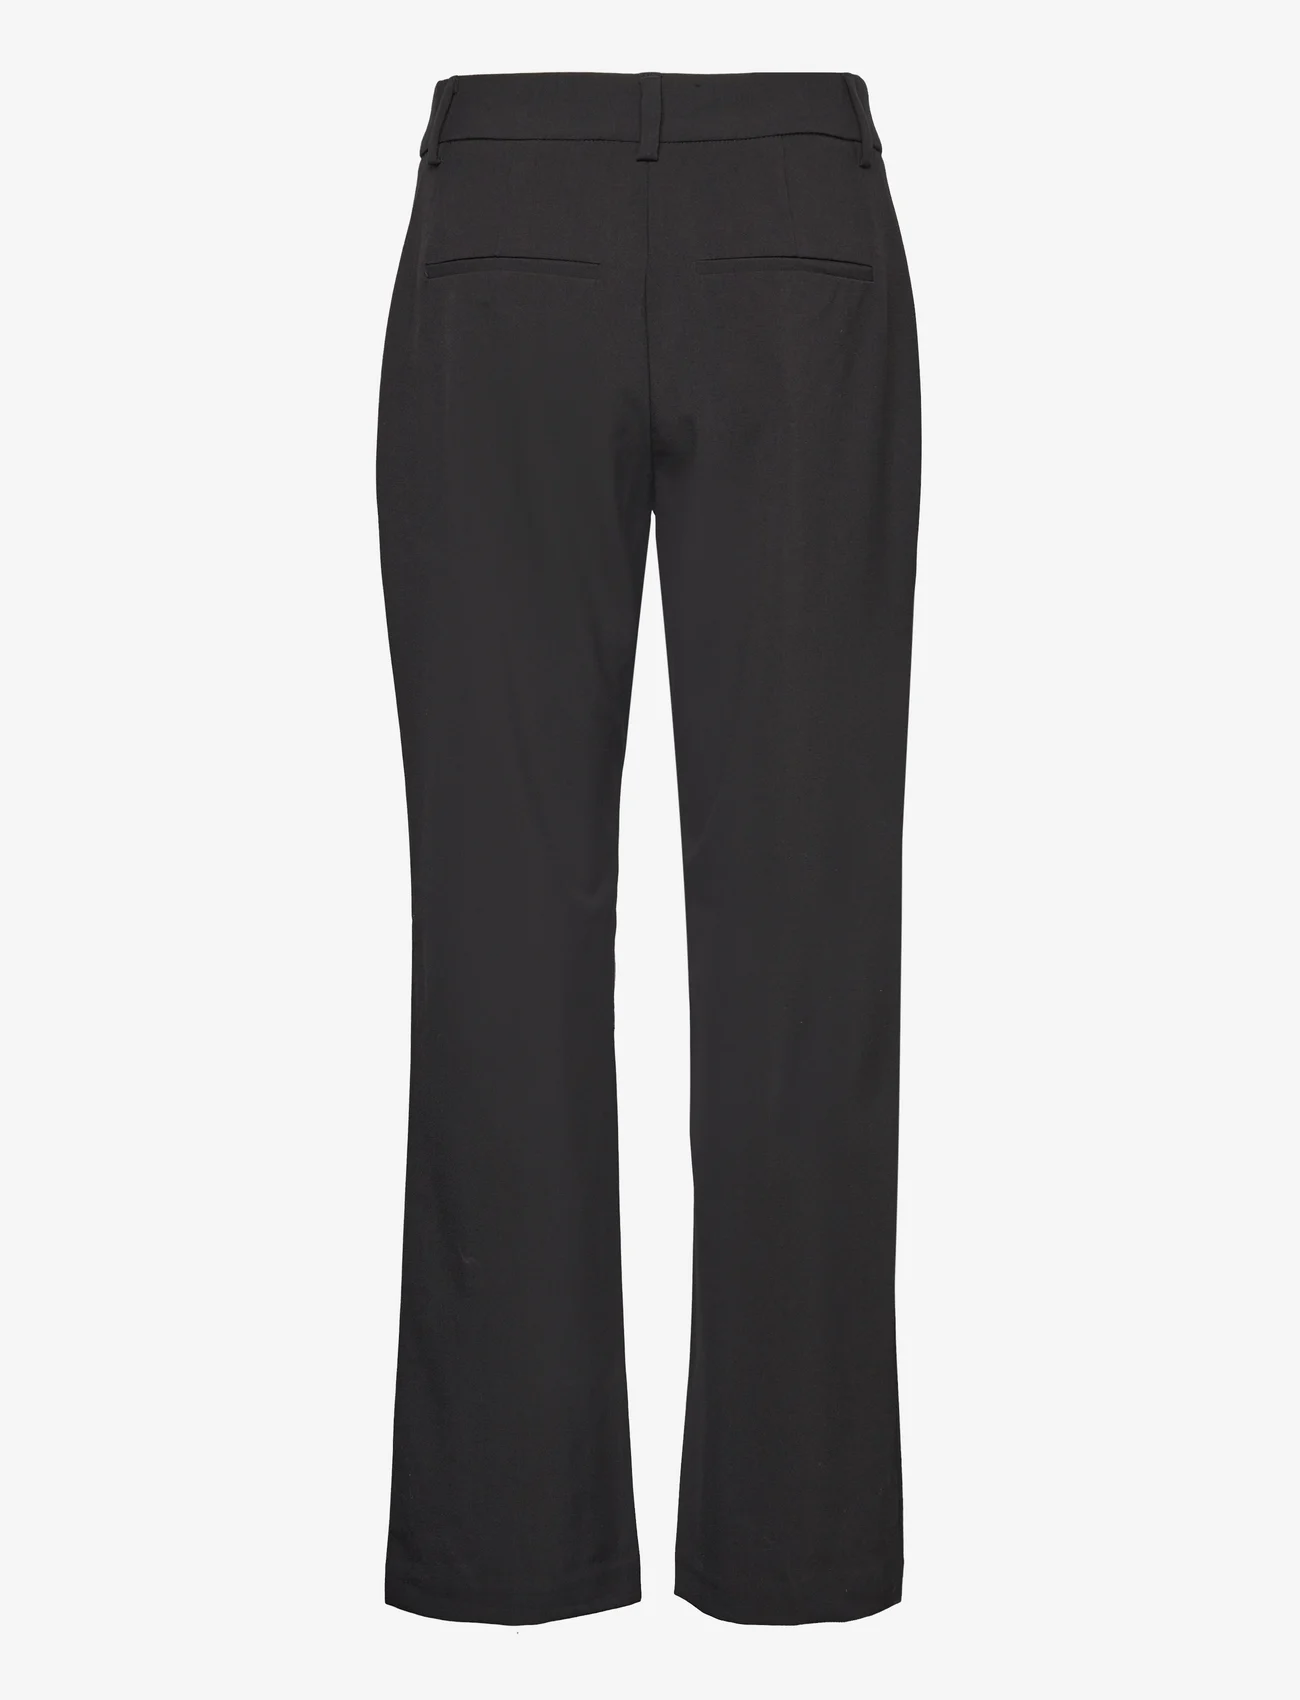 MSCH Copenhagen - MSCHJessamina Chana Pants - tailored trousers - black - 1